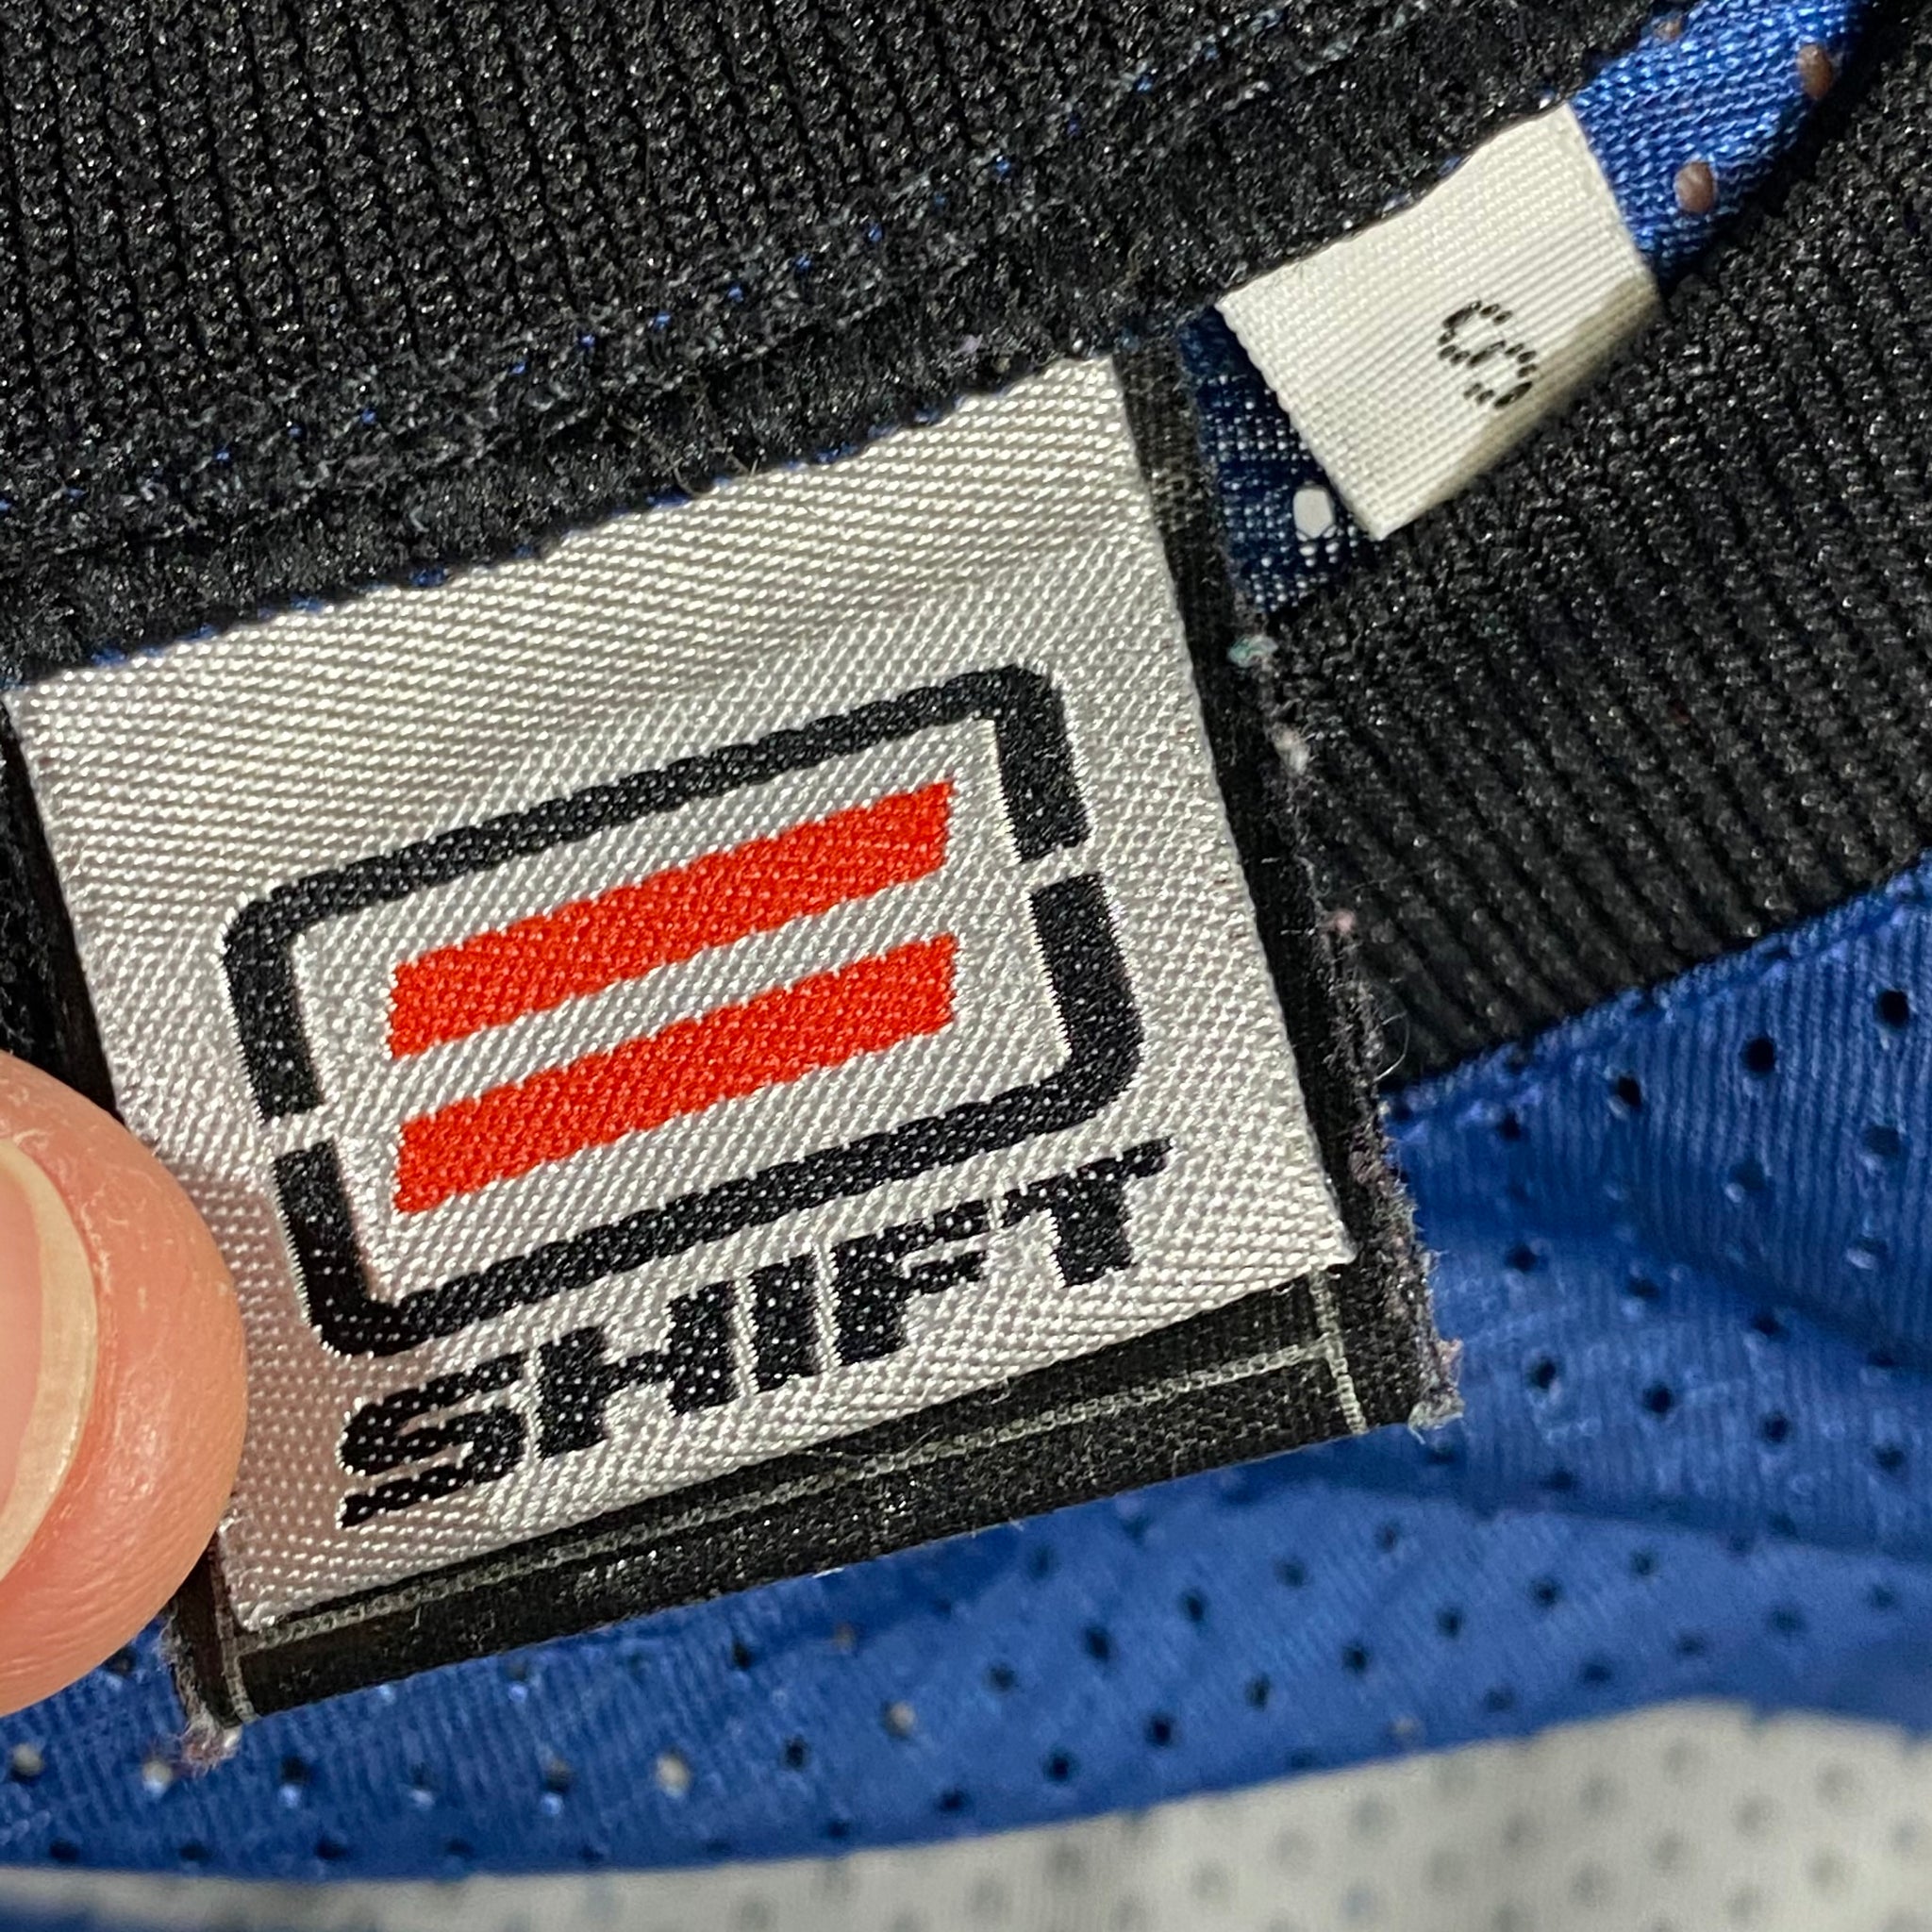 Shift jersey. Small